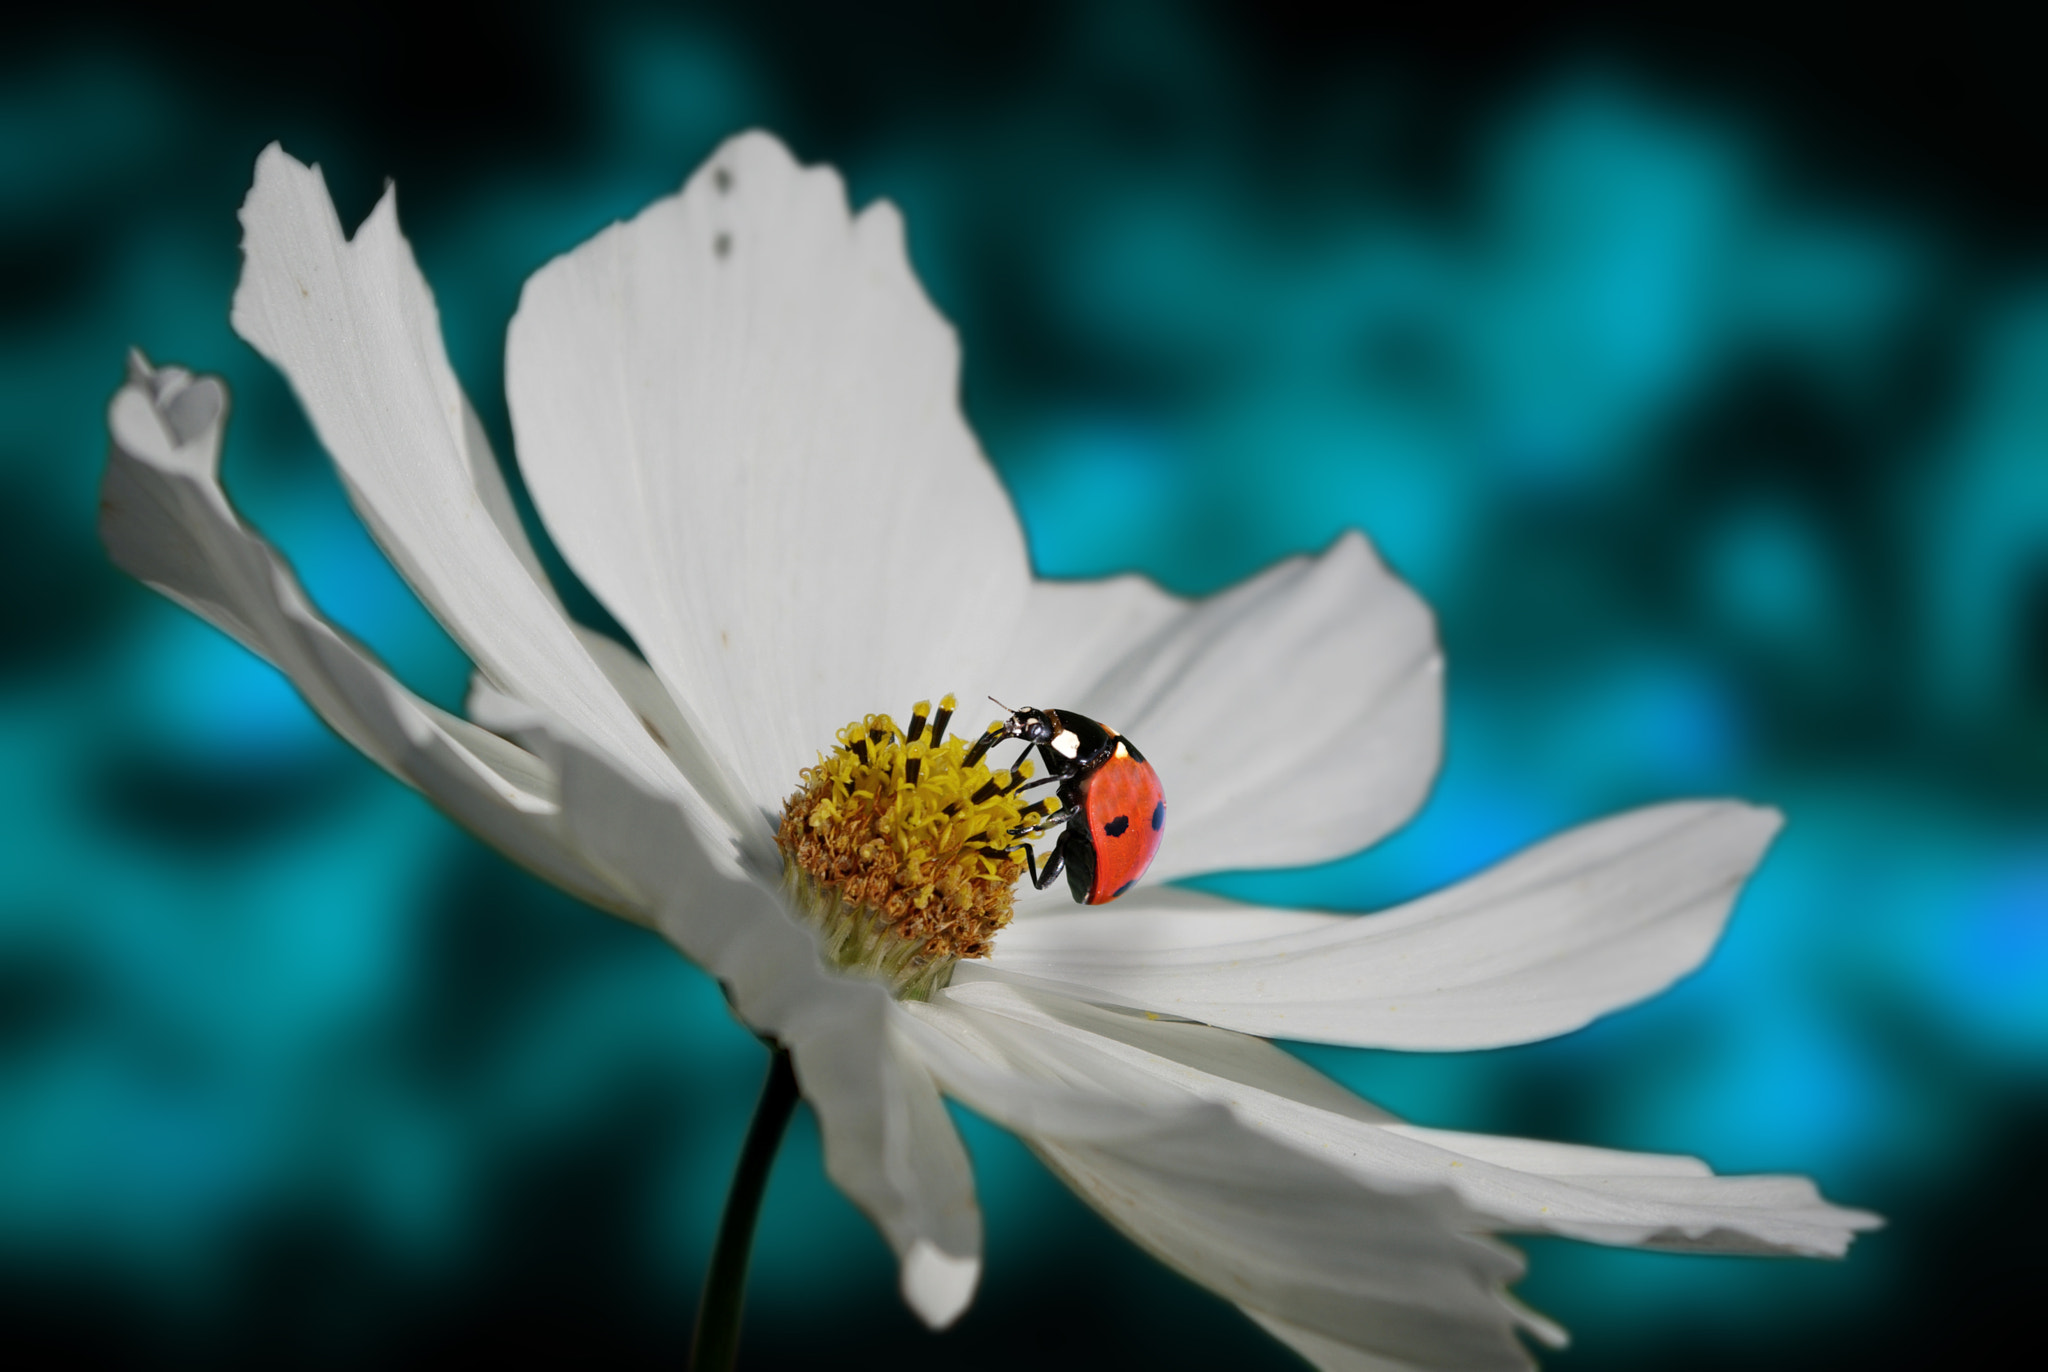 Pentax K-m (K2000) sample photo. Ladybug photography